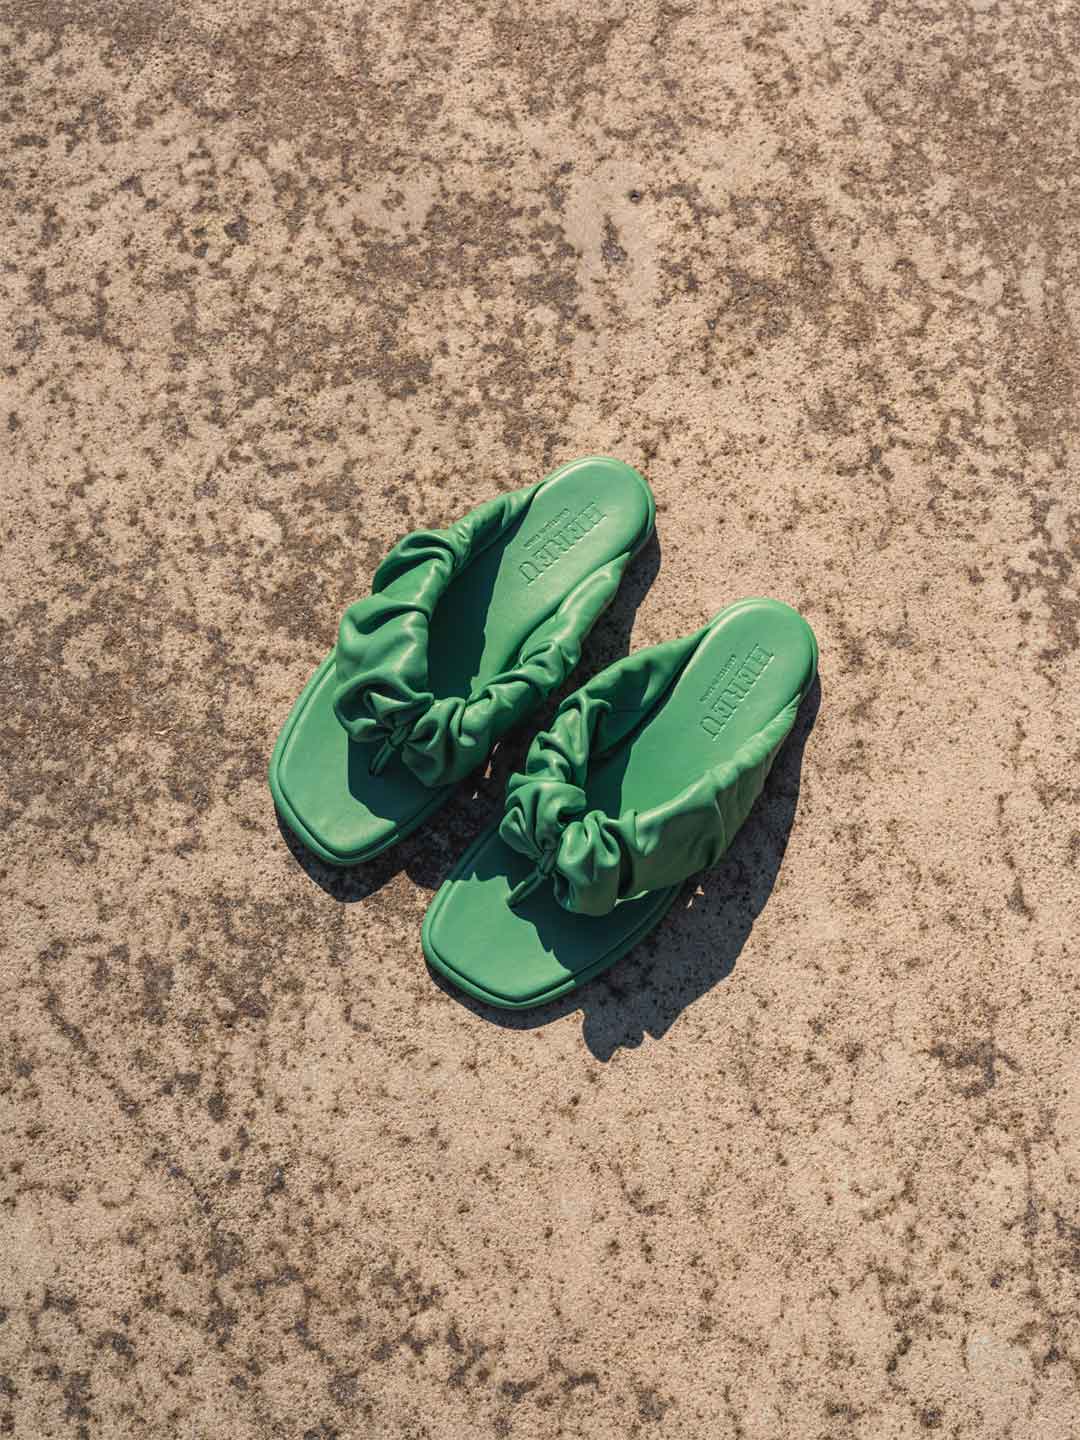 Nuvola Scrunchie Sandals - Green